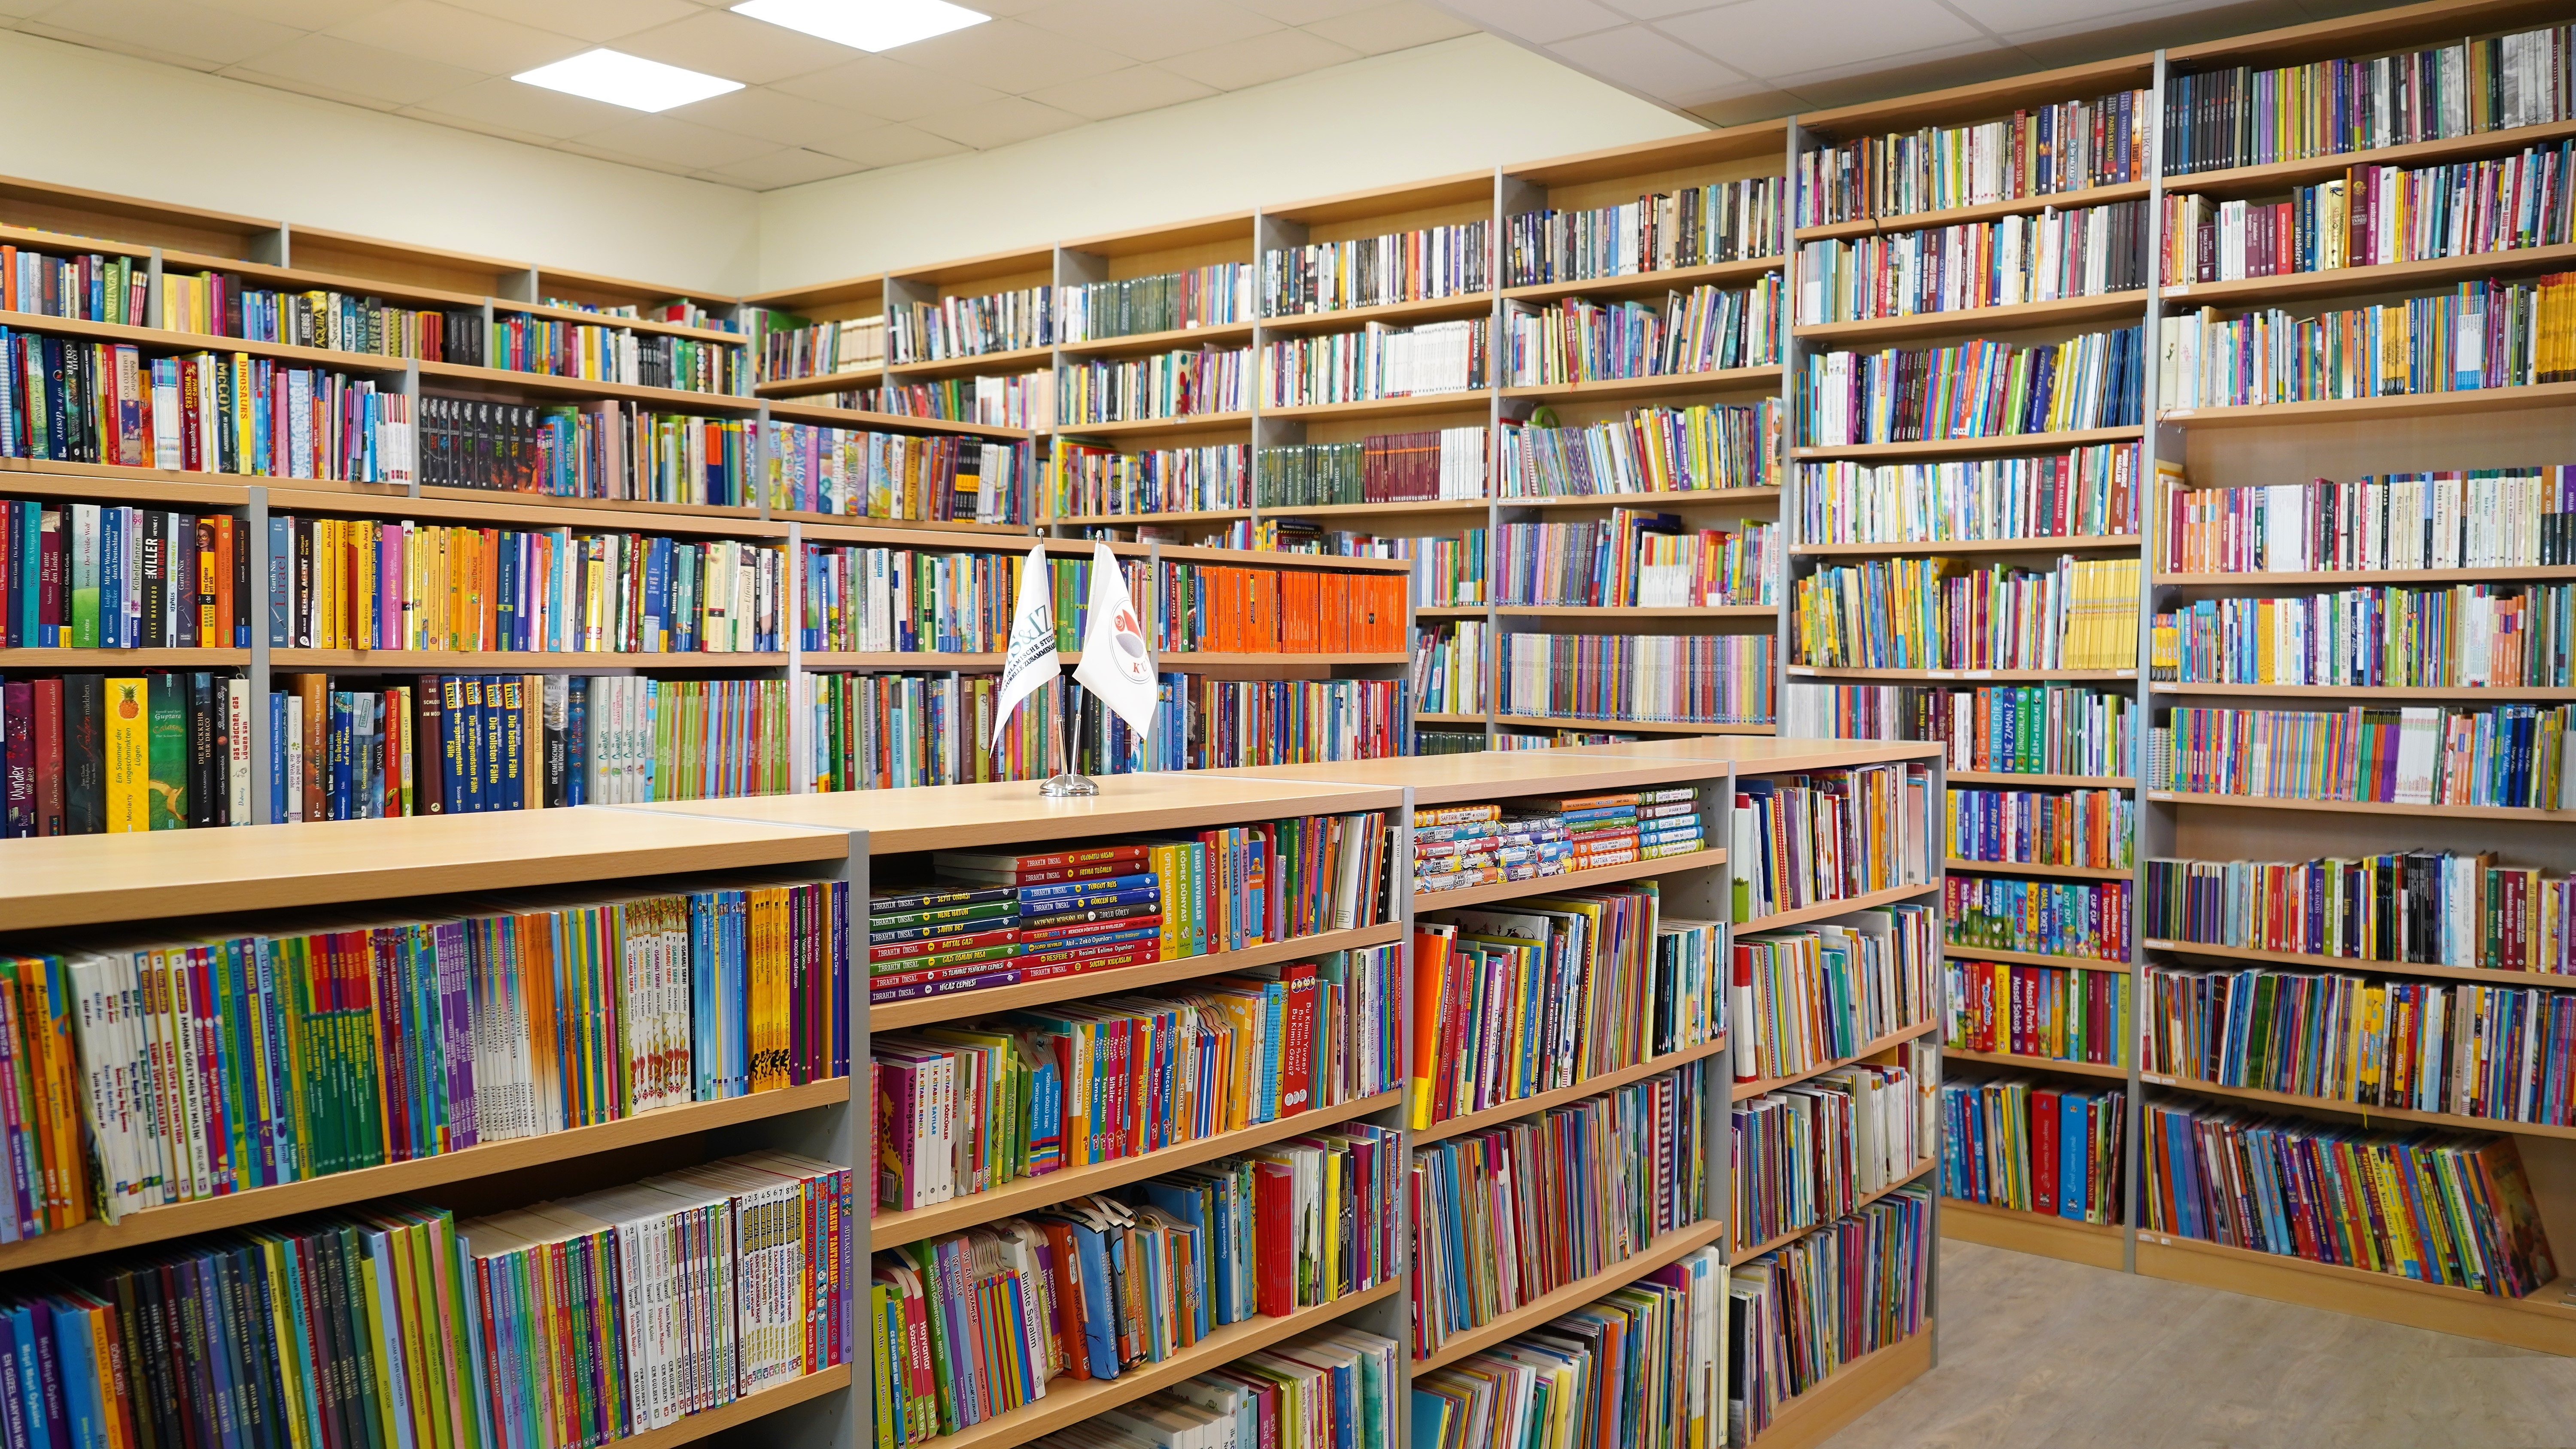 KUDEM Children's Library